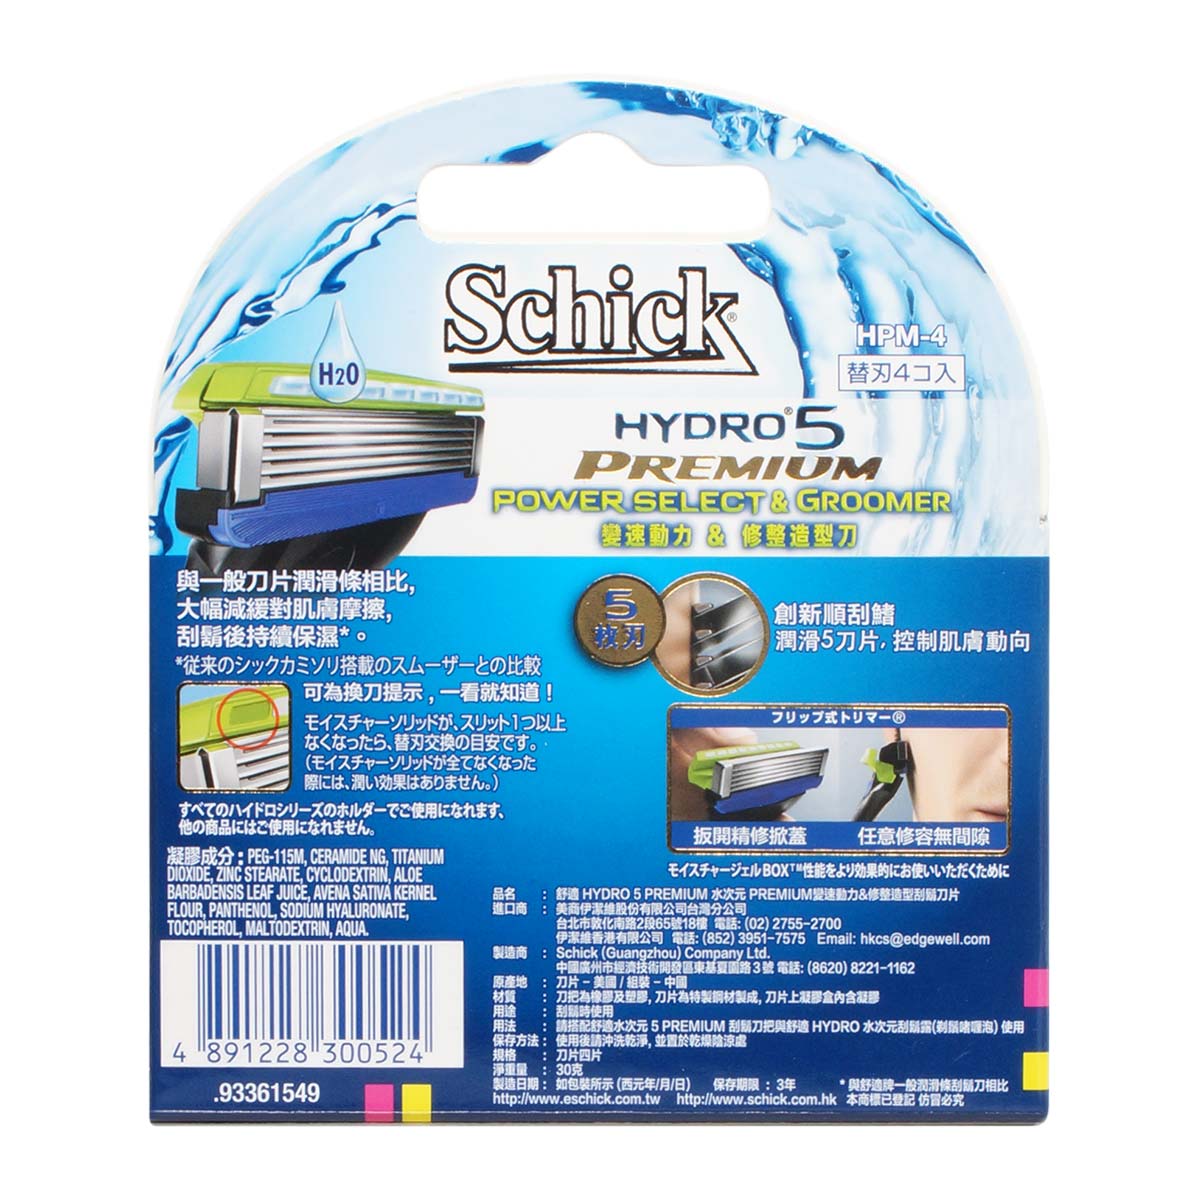 Schick 舒适 Hydro5 Power Select & Groomer 变速动力 & 修整造型刀补充刀片 4 片-p_3